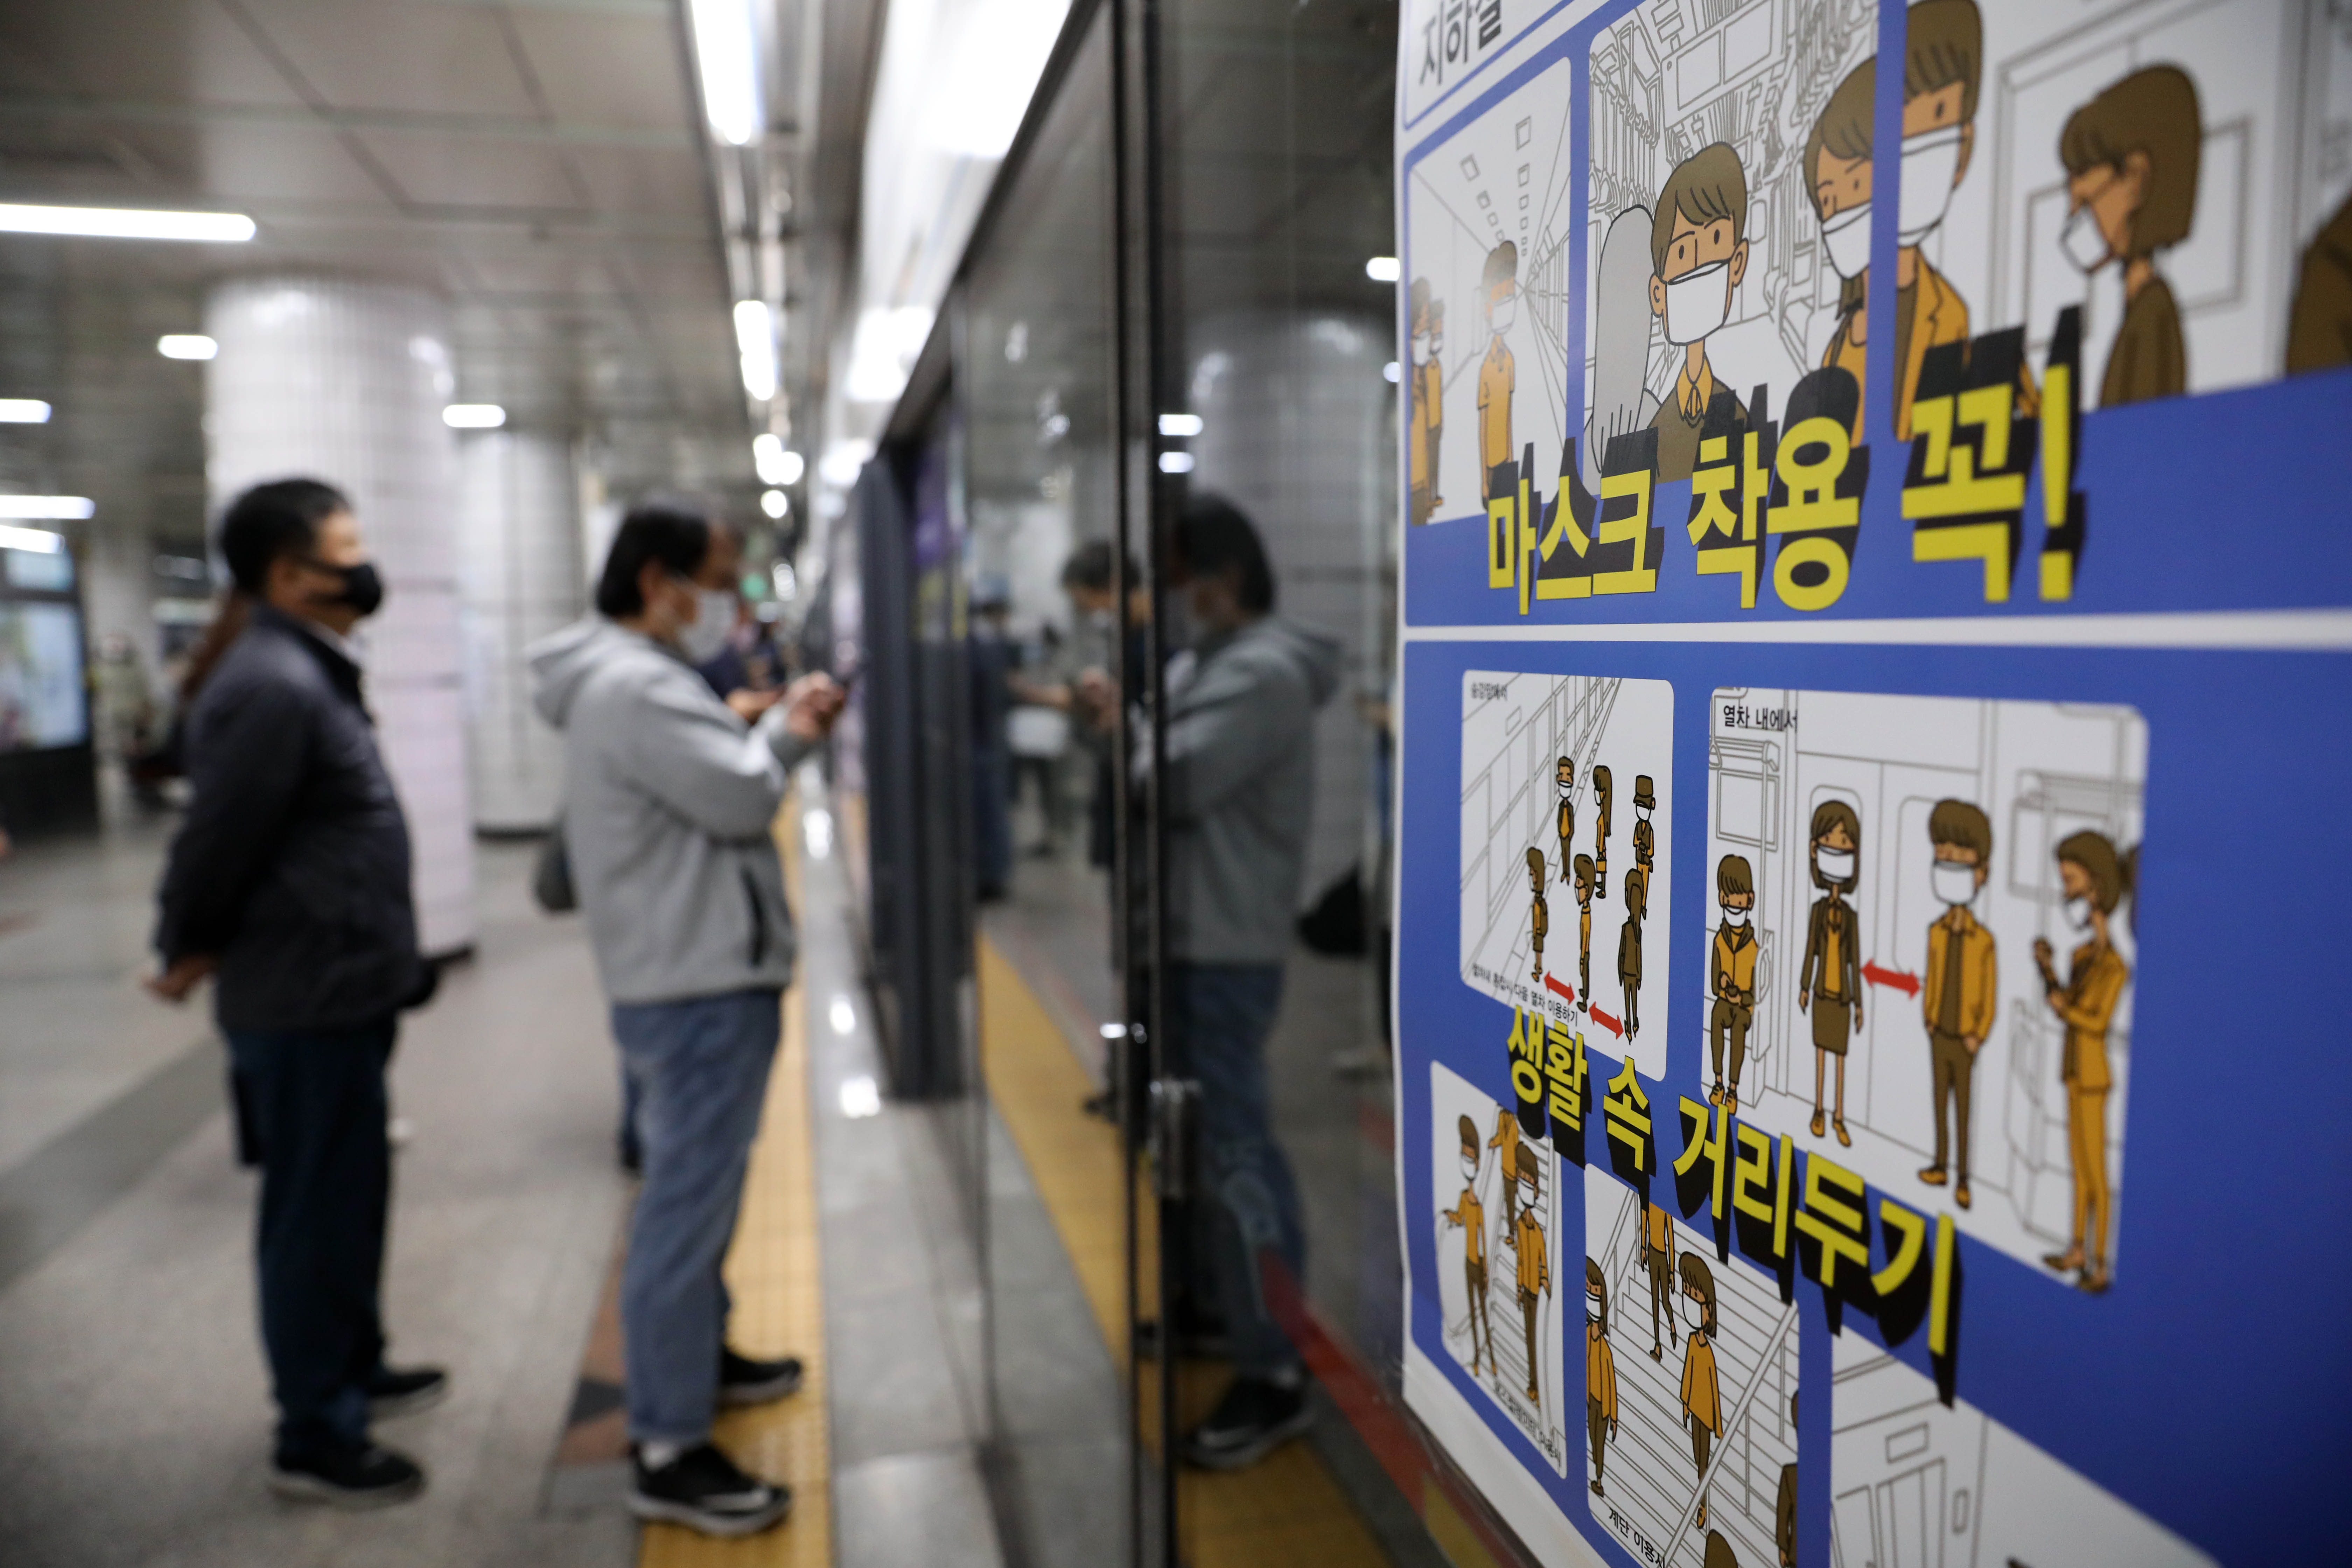 13일부터 서울 지하철 안에서 이동이 어려울 정도로 혼잡할 때 마스크를 착용하지 않으면 승객은 탑승할 수 없다. 마스크를 가져오지 않았을 경우 역사에서 덴탈마스크를 구매할 수 있다.  서울시에 따르면 지하철 승차정원 대비 탑승객 수를 나타낸 '지하철 혼잡도'가 150%이상으로, 열차 내 이동이 어려운 '혼잡 단계'일 경우 마스크를 착용하지 않은 승객의 탑승이 제한된다. 혼잡도가 150%에 이를 경우 마스크 착용을 요청하는 안내방송도 나온다. 역무원이 마스크 미착용 승객의 개찰구 진입도 제한한다.  시는 강남역·홍대입구역·신도림역·고속터미널역 등 혼잡이 심한 10개 주요역과 10개 환승역 승강장에 다음달부터 안전요원을 배치해 승객들이 승차 대기선과 안전거리를 지키며 탑승하도록 안내할 예정이다.  시는 출·퇴근 시간에 추가 전동차를 배치해 혼잡도를 낮추기로 했다. 혼잡도가 높은 노선(2·4·7호선)은 열차를 증편 운행하고 그 외 노선들은 비상대기 열차를 배치해 혼잡상황 발생시 즉시 투입한다. 이 중에서도 혼잡이 심한 2호선은 혼잡시간대에 열차자동운전장치(ATO·Auto Train Operation) 전동차 12편성을 집중 배치해 운행 간격을 조정키로 했다.  혼잡도 170% 이상이 되면 안내요원의 탑승 통제와 혼잡구간을 무정차로 통과한다.  마스크 미소지 승객을 위해 덴탈마스크를 전 역사의 자판기(448곳), 통합판매점(118곳), 편의점(157곳) 등에서 시중가격으로 구매할 수 있다.  서울 지하철을 운영하는 서울교통공사는 이날부터 시민들에게 1~8호선 열차의 호선별 혼잡도 정보를 제공하기 위해 혼잡도 예보제도 시행됐다. 공사는 호선별 최고 혼잡구간과 혼잡시간대, 혼잡도 수치 등을 전날 오후 6시부터 제공된다. 혼잡도 예상 정보는 서울교통공사 공식 SNS(트위터, 페이스북), 홈페이지, 또타지하철앱, 언론 보도자료 등을 통해 확인할 수 있다.